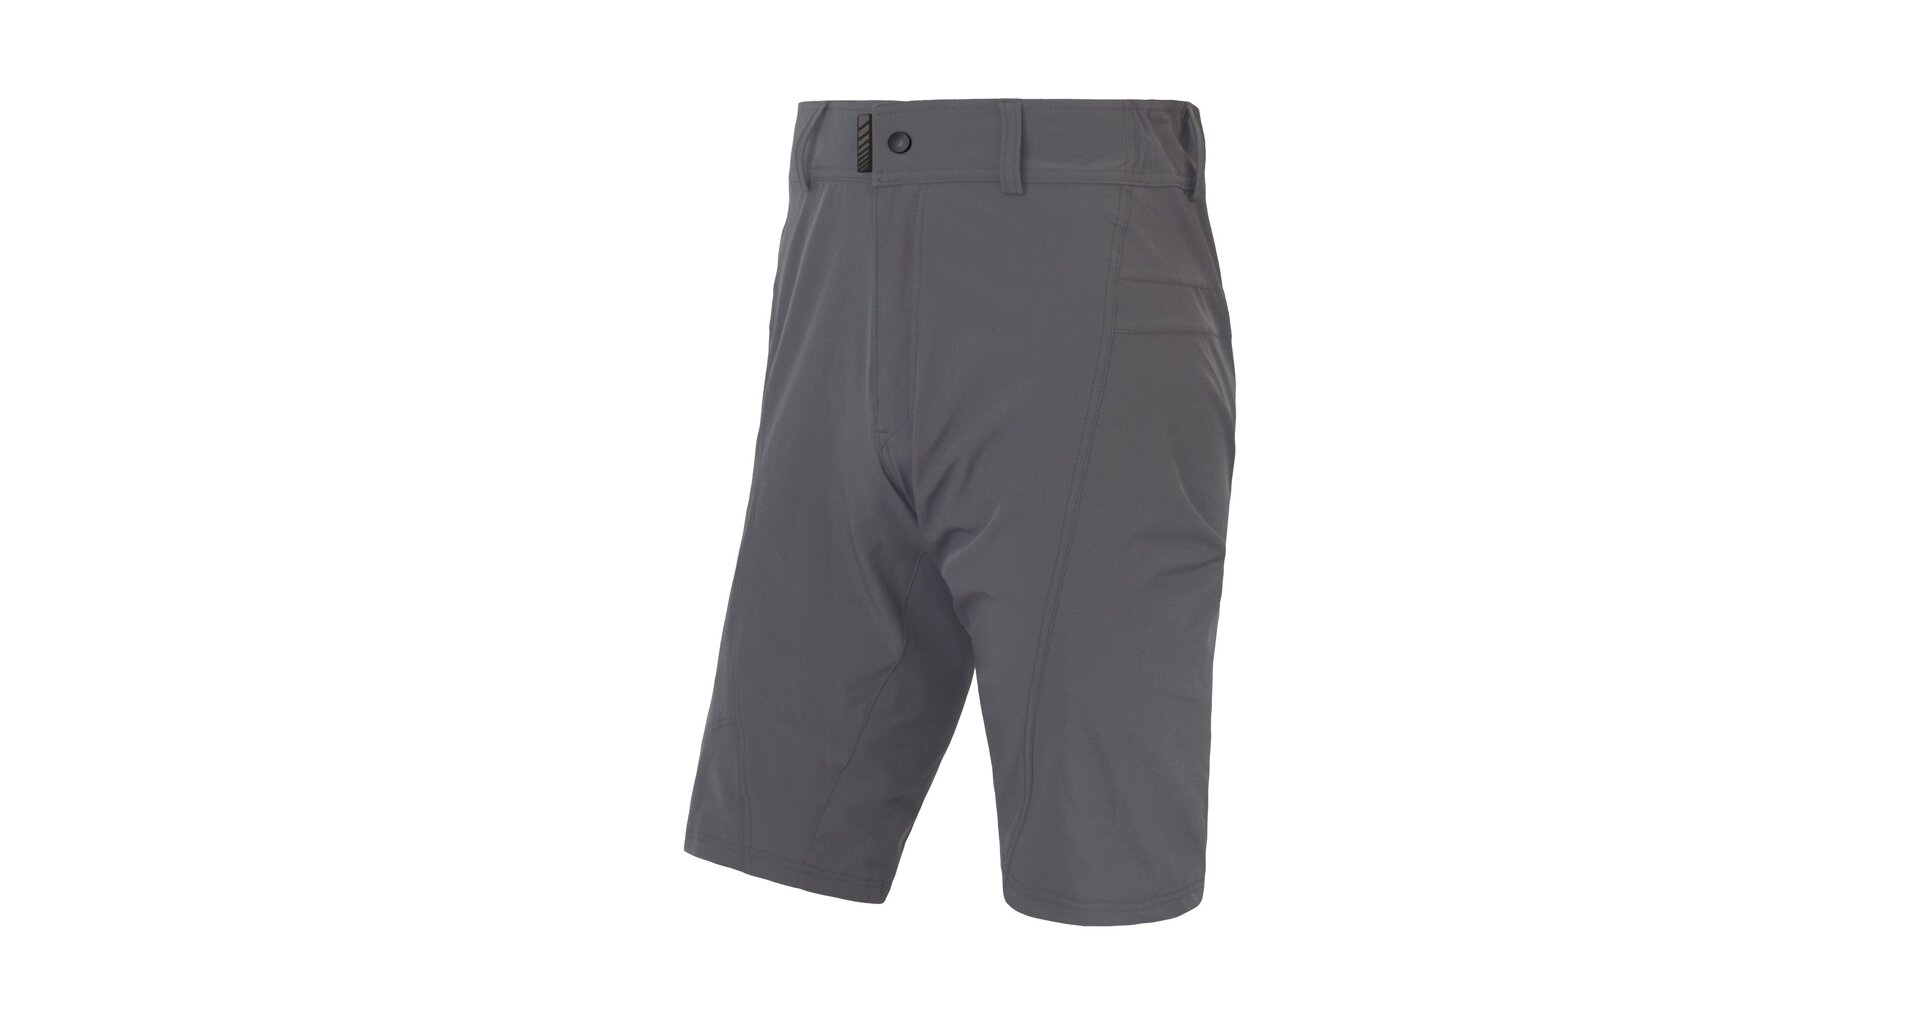 SENSOR HELIUM pánské kalhoty s cyklovložkou krátké volné rhino grey Velikost: S